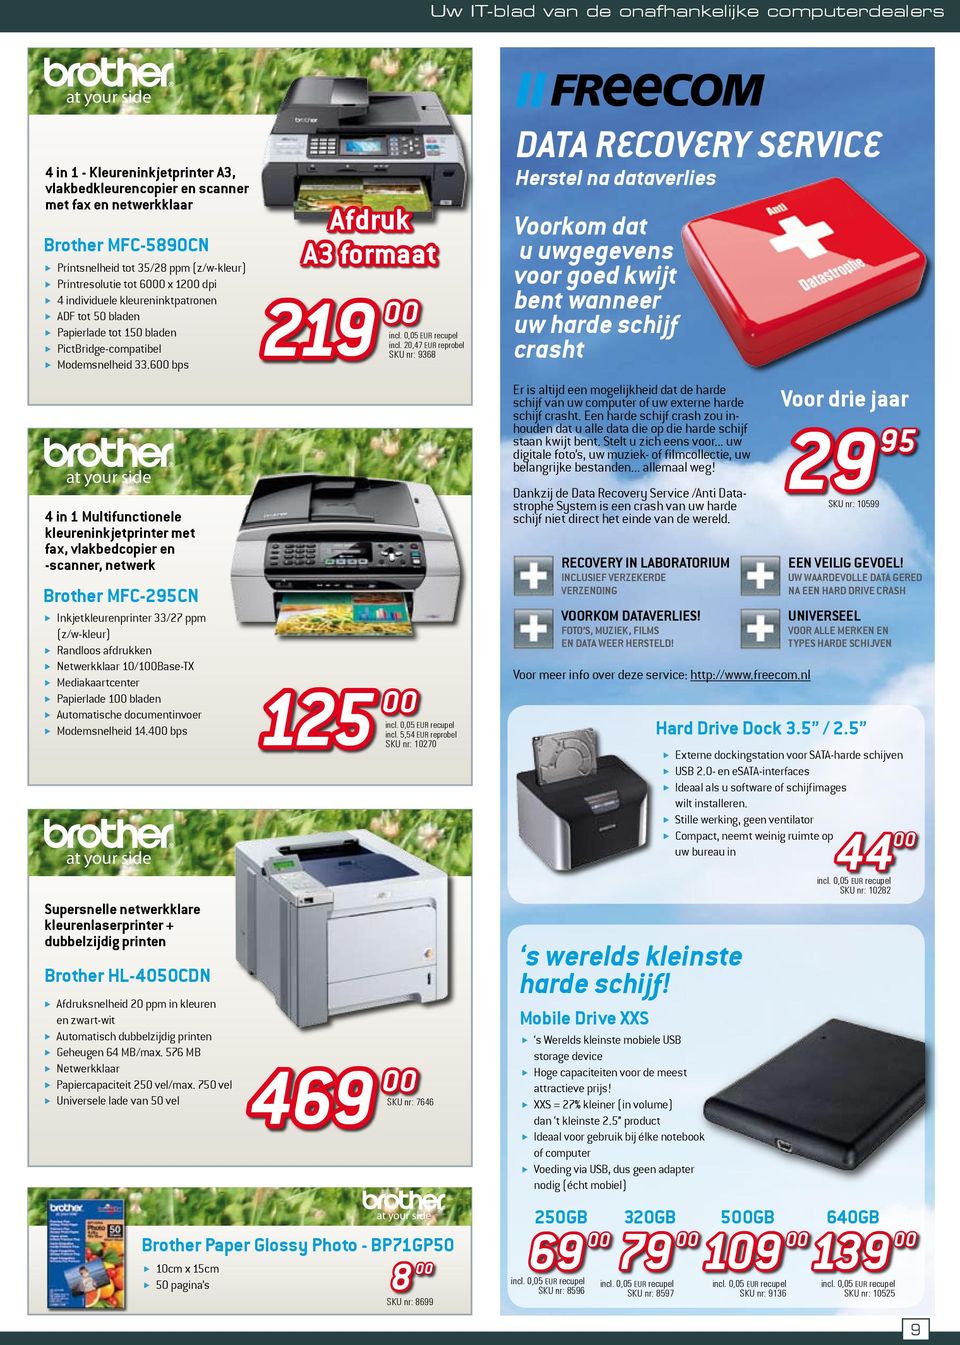 6 bps 4 in 1 Multifunctionele kleureninkjetprinter met fax, vlakbedcopier en -scanner, netwerk Brother MFC-295CN Supersnelle netwerkklare kleurenlaserprinter + dubbelzijdig printen